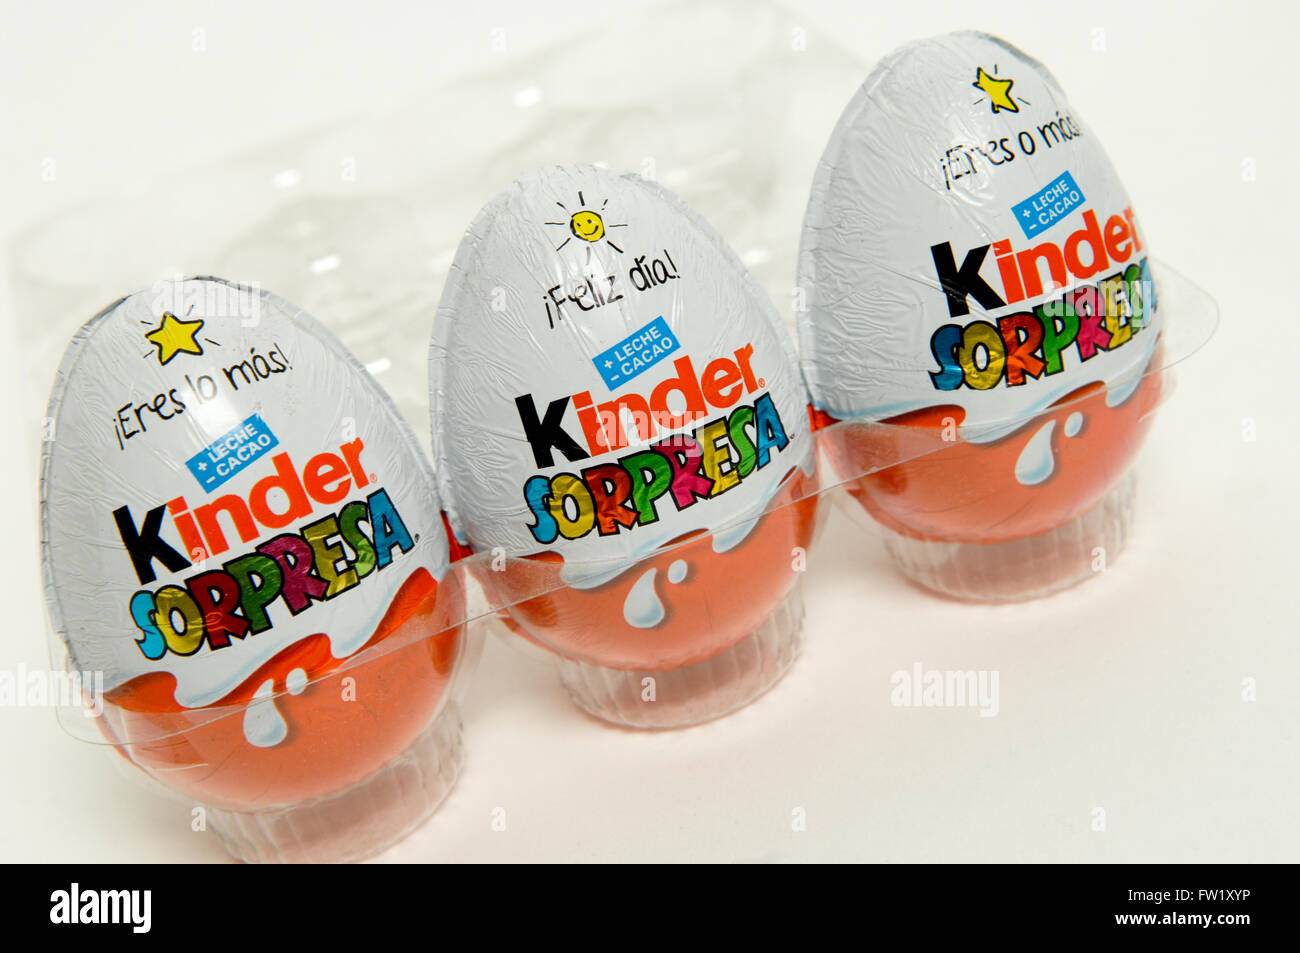 Kinder Surprise, également connu sous le nom d'un oeuf Kinder fabriqués par la société italienne Ferrero prises sur fond blanc. Banque D'Images